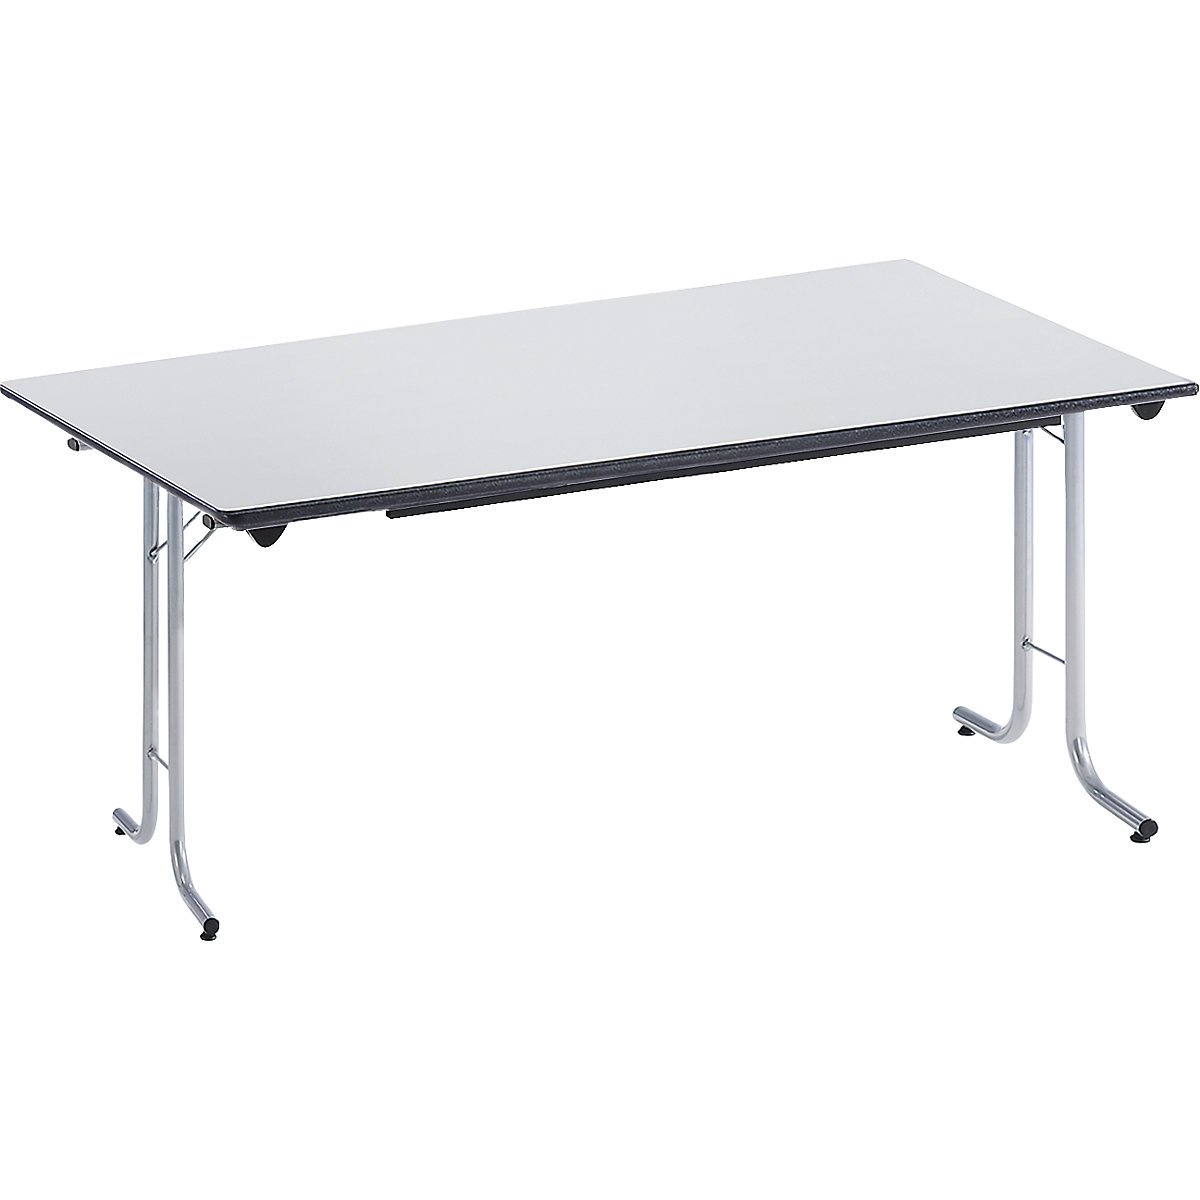 Inklapbare tafel, met afgeronde randen, tafelpoten van staalbuis, bladvorm rechthoekig, 1400 x 700 mm, frame aluminiumkleurig, blad lichtgrijs-12